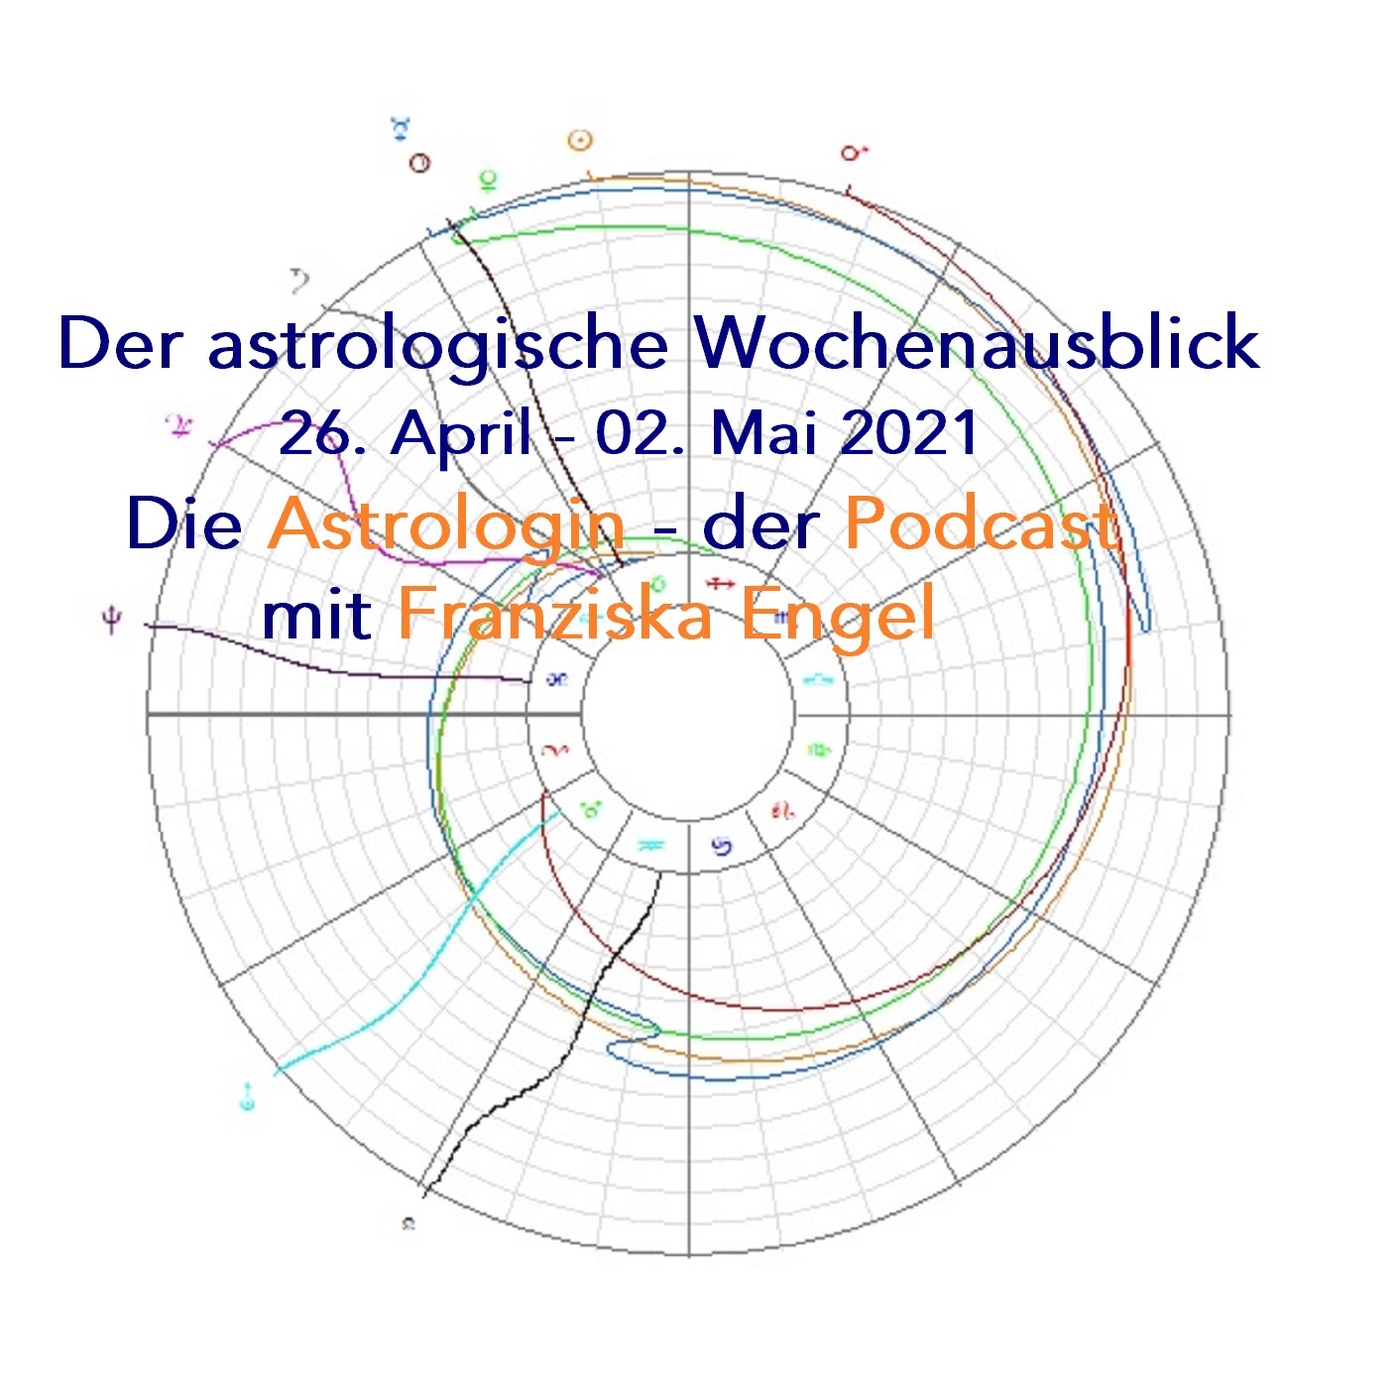 Astrologischer Wochenausblick 26. April - 02. Mai 2021